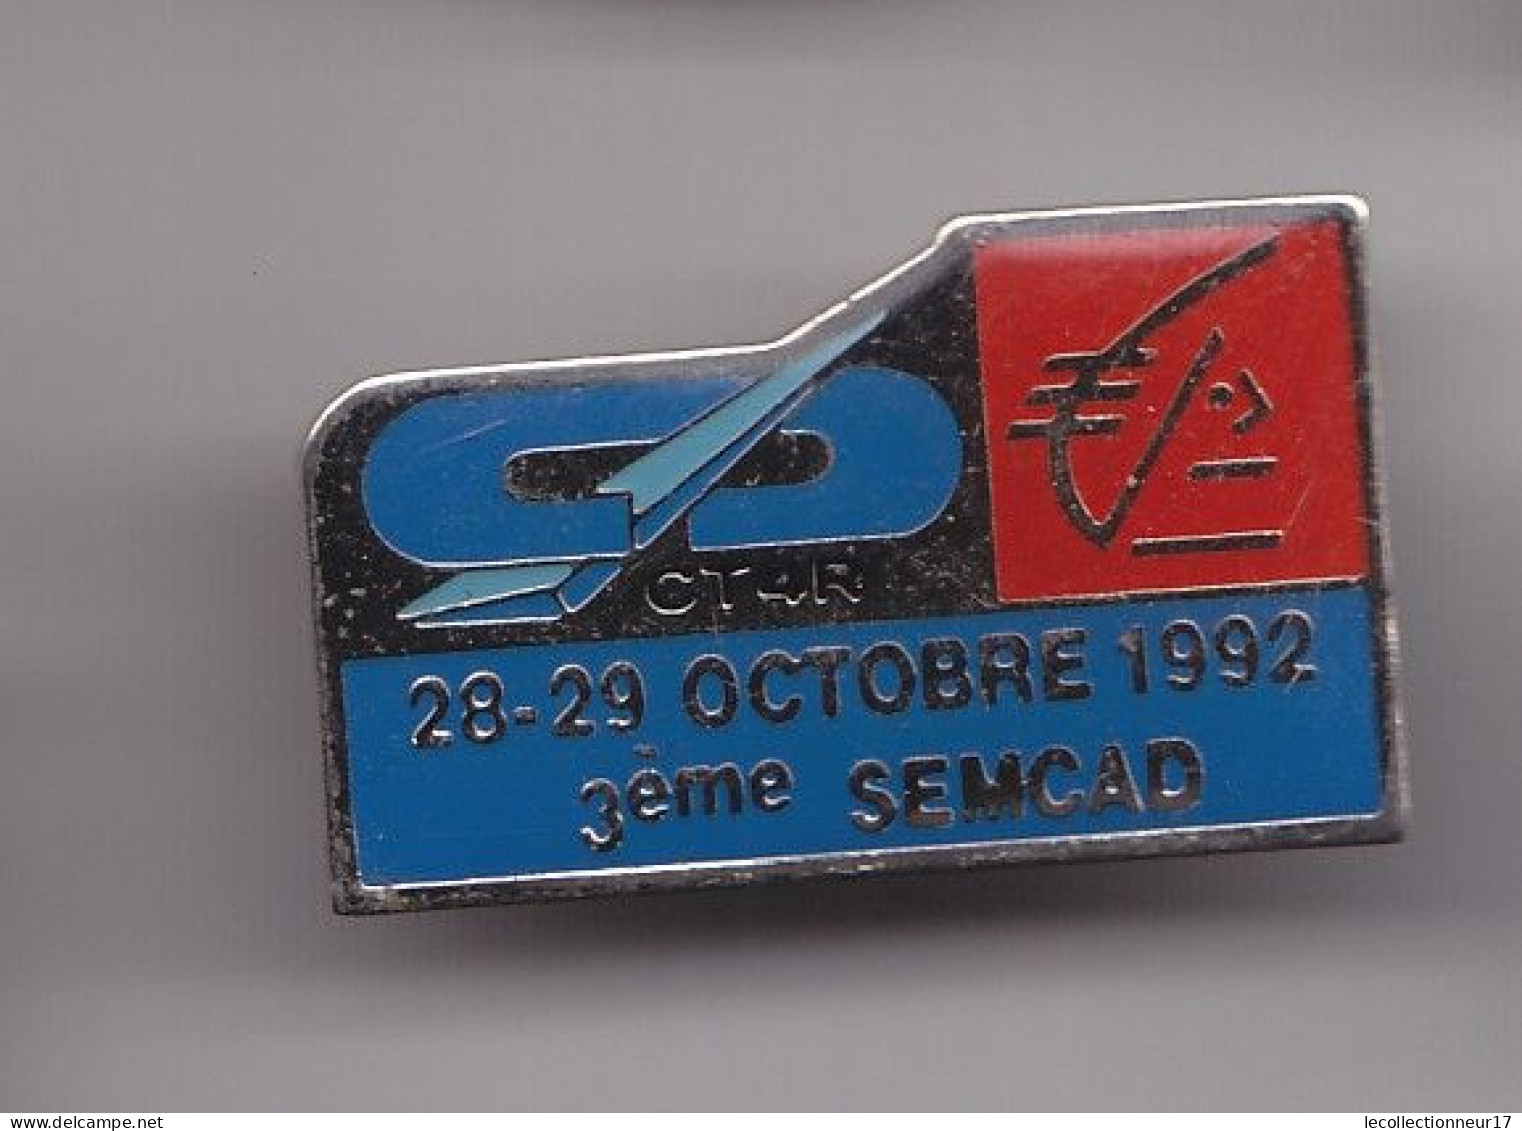 Pin's  Caisse D' Epargne Ecureuil CT4R 28-29 Octobre 1992 3ème Semcad Réf 7498JL - Bancos